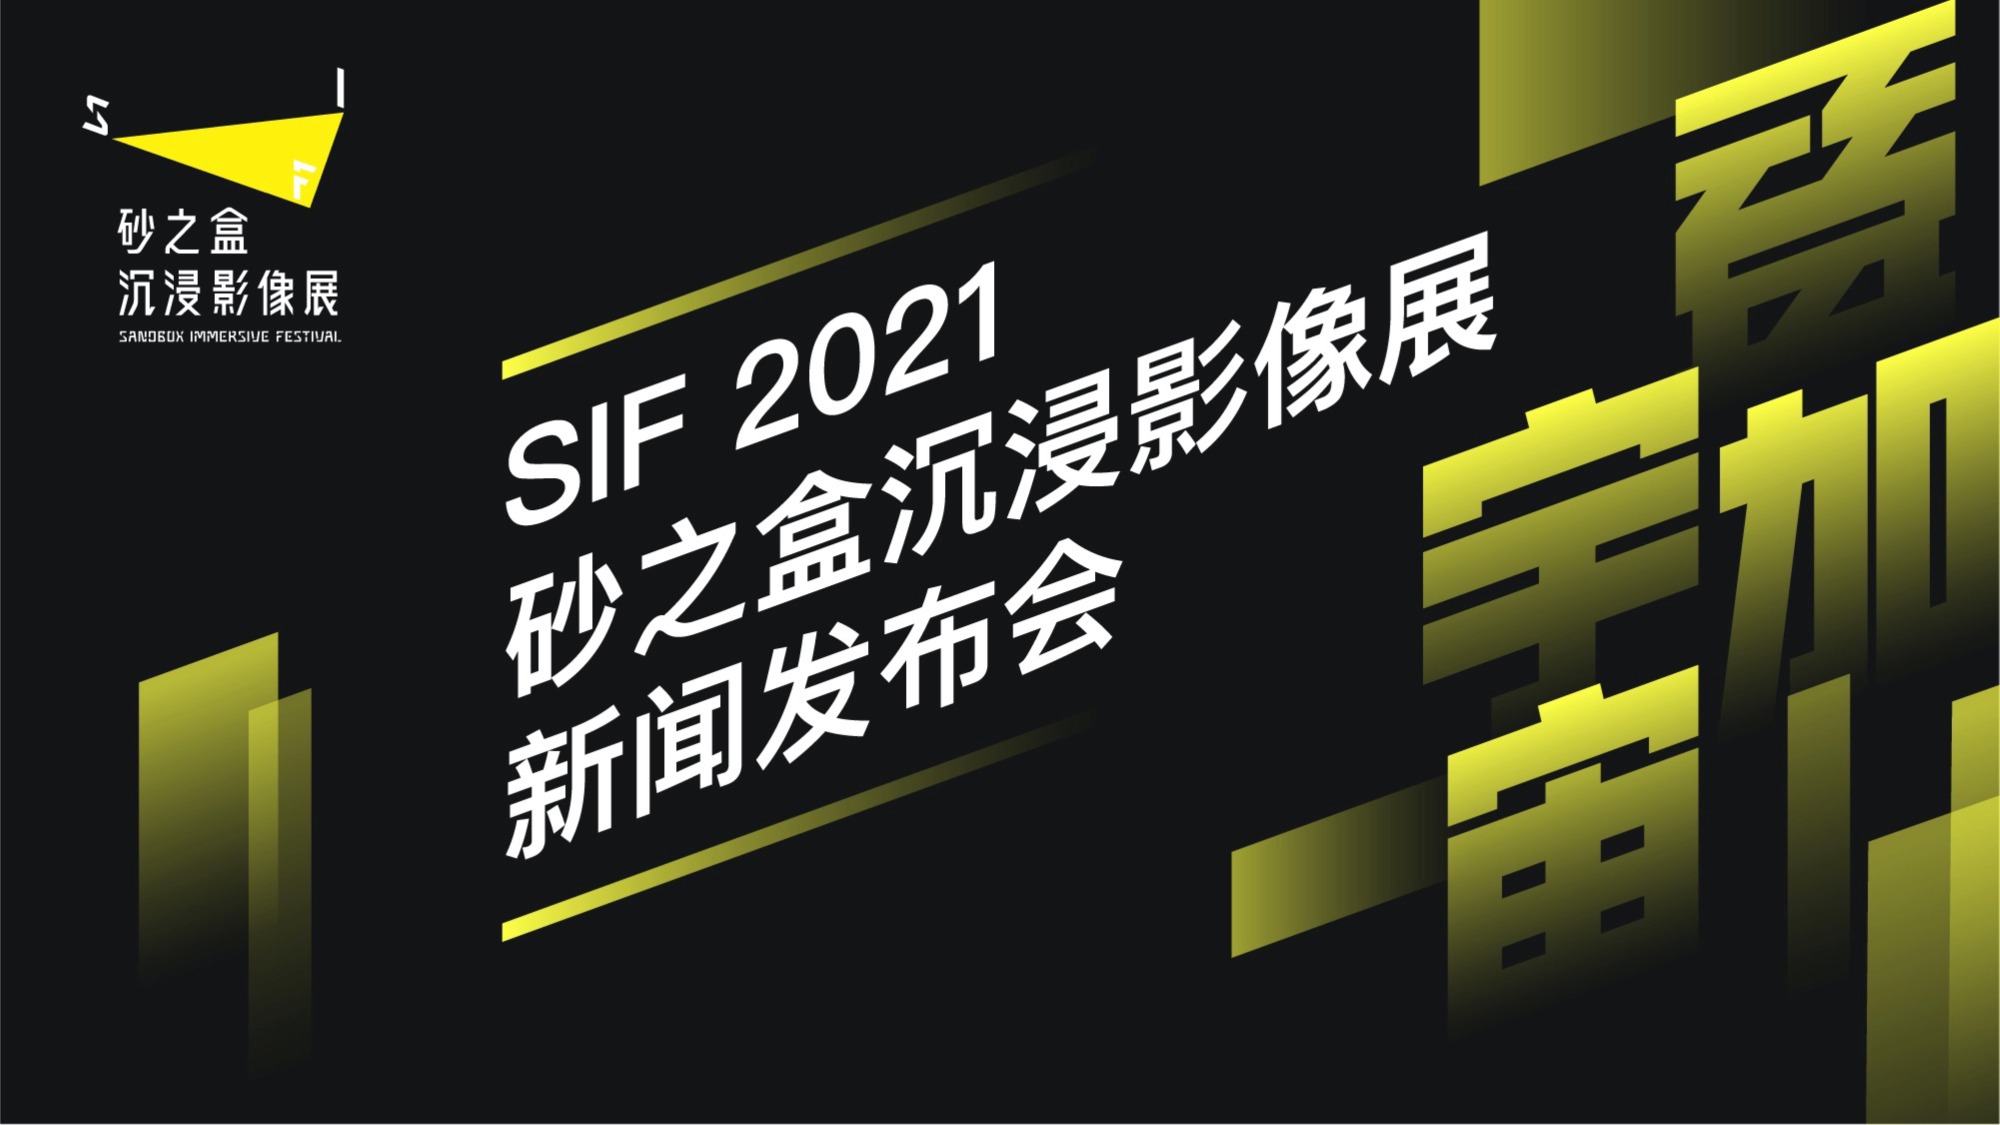 2021 砂之盒XR沉浸影像展于7月在北京展览馆召开